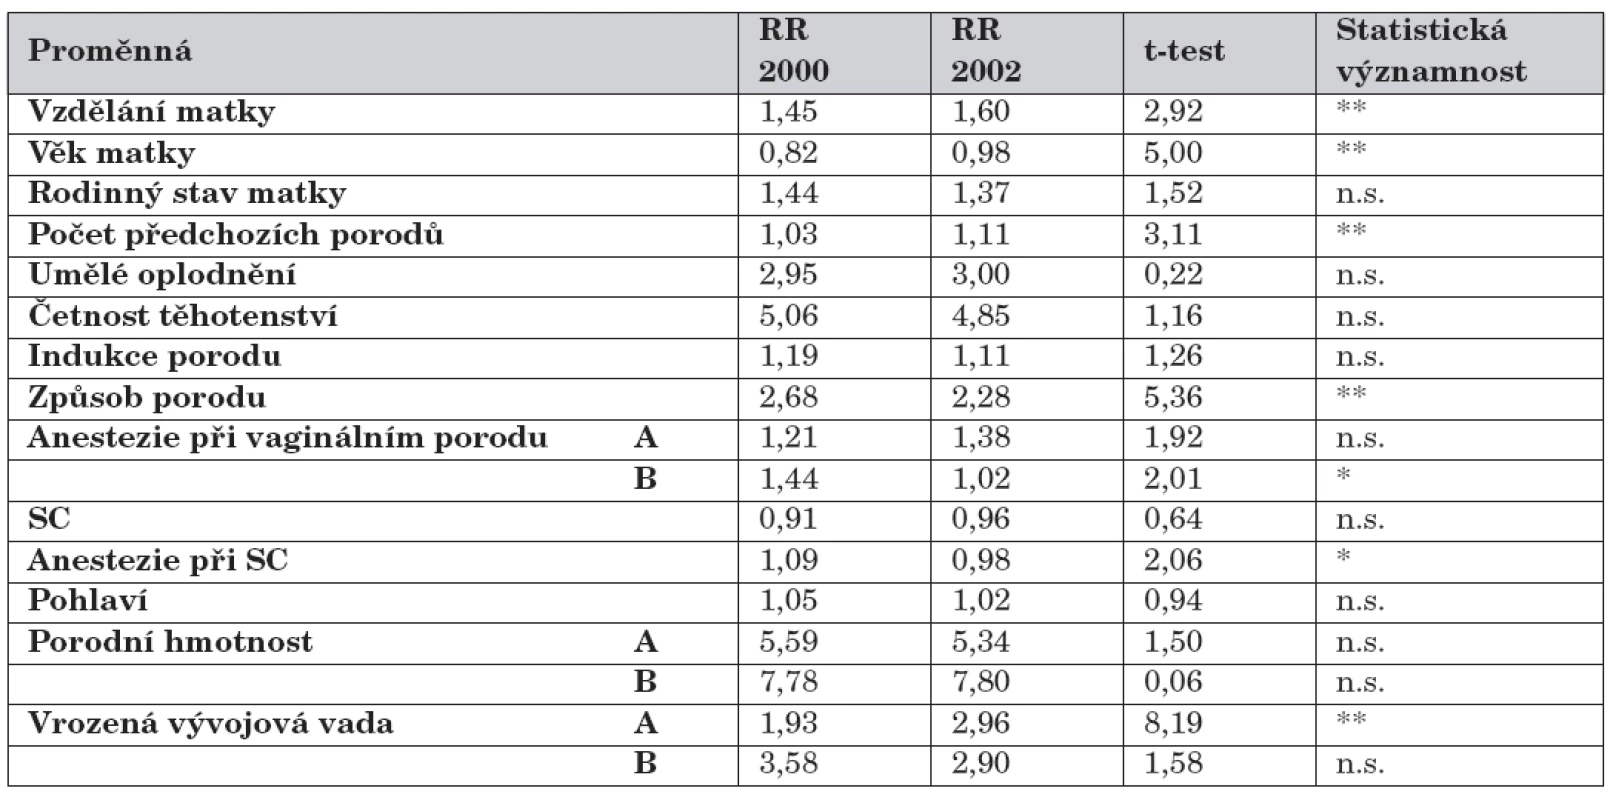 Novorozenci podle způsobu výživy a rizikových faktorů, t-test (porovnání RR let 2000 a 2002).